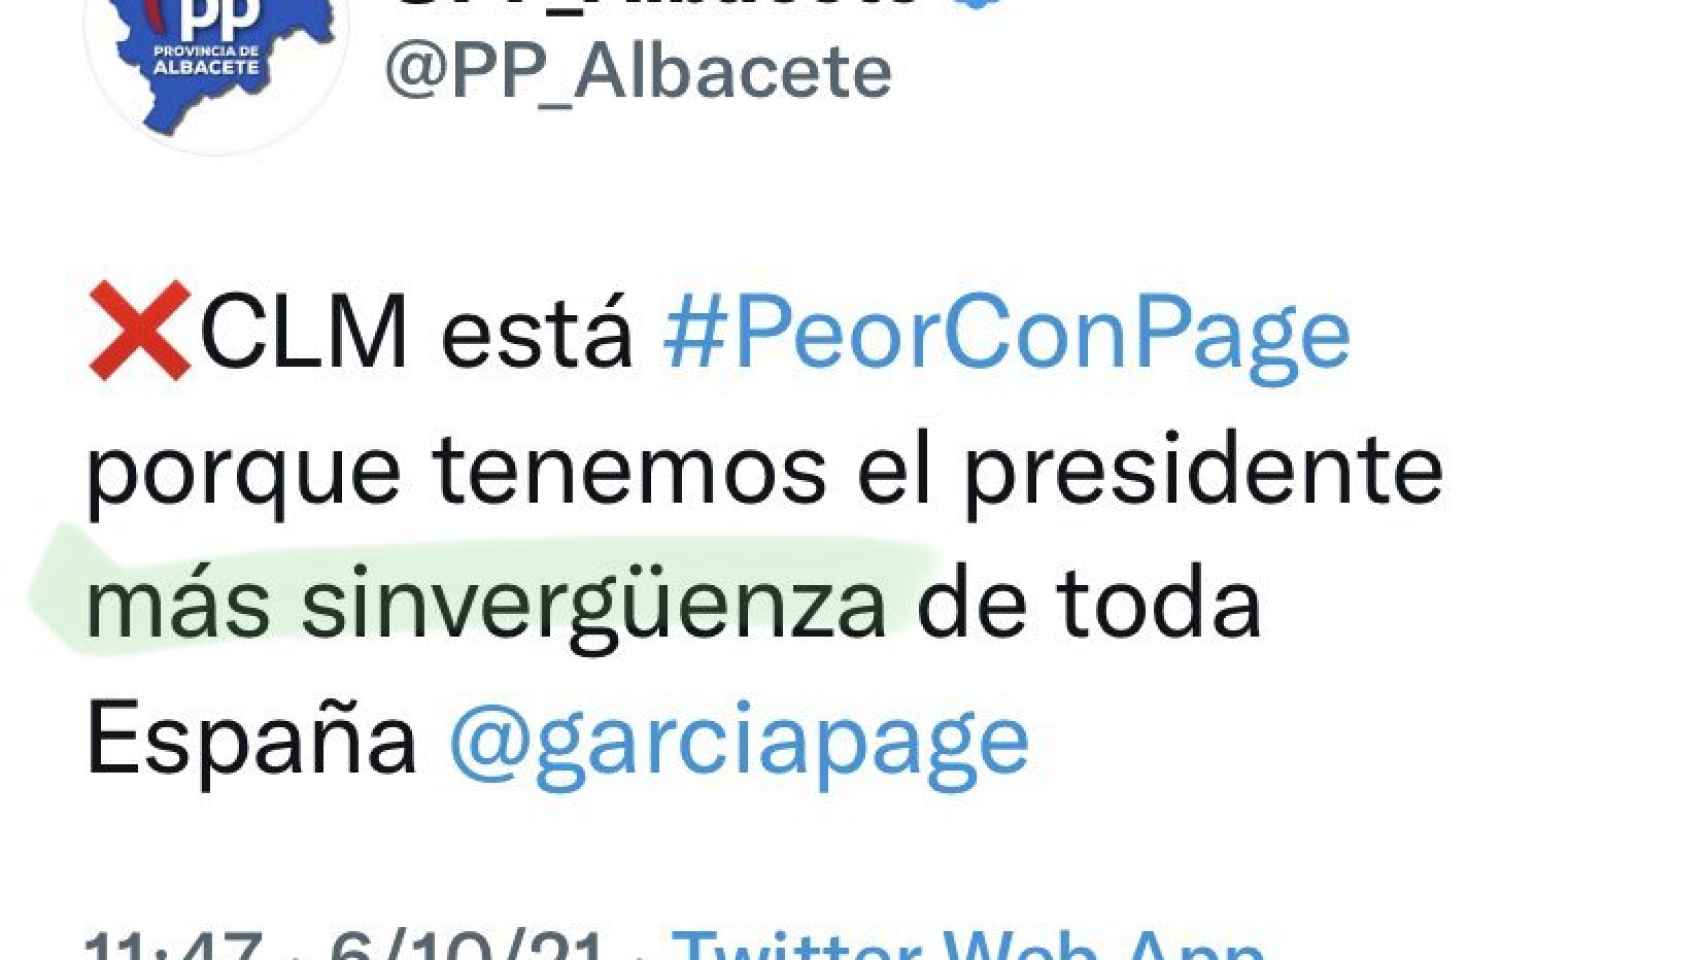 El PP de Albacete pide perdón por llamar sinvergüenza a Page en Twitter